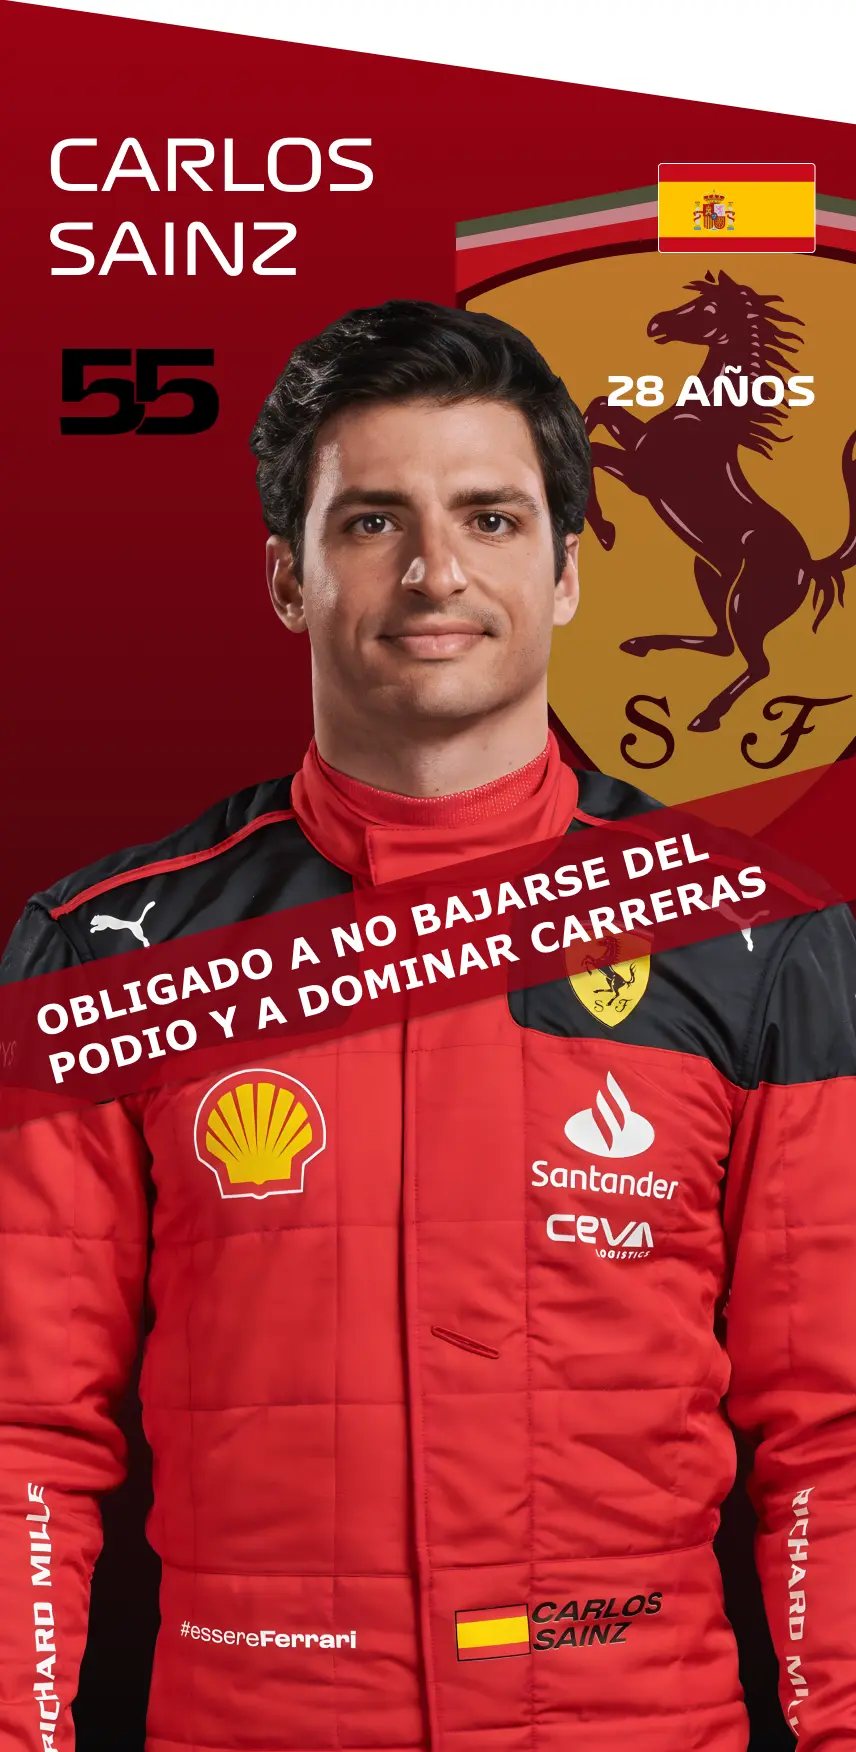 Carlos Sainz: Obligado a no bajarse del podio y a dominar carreras